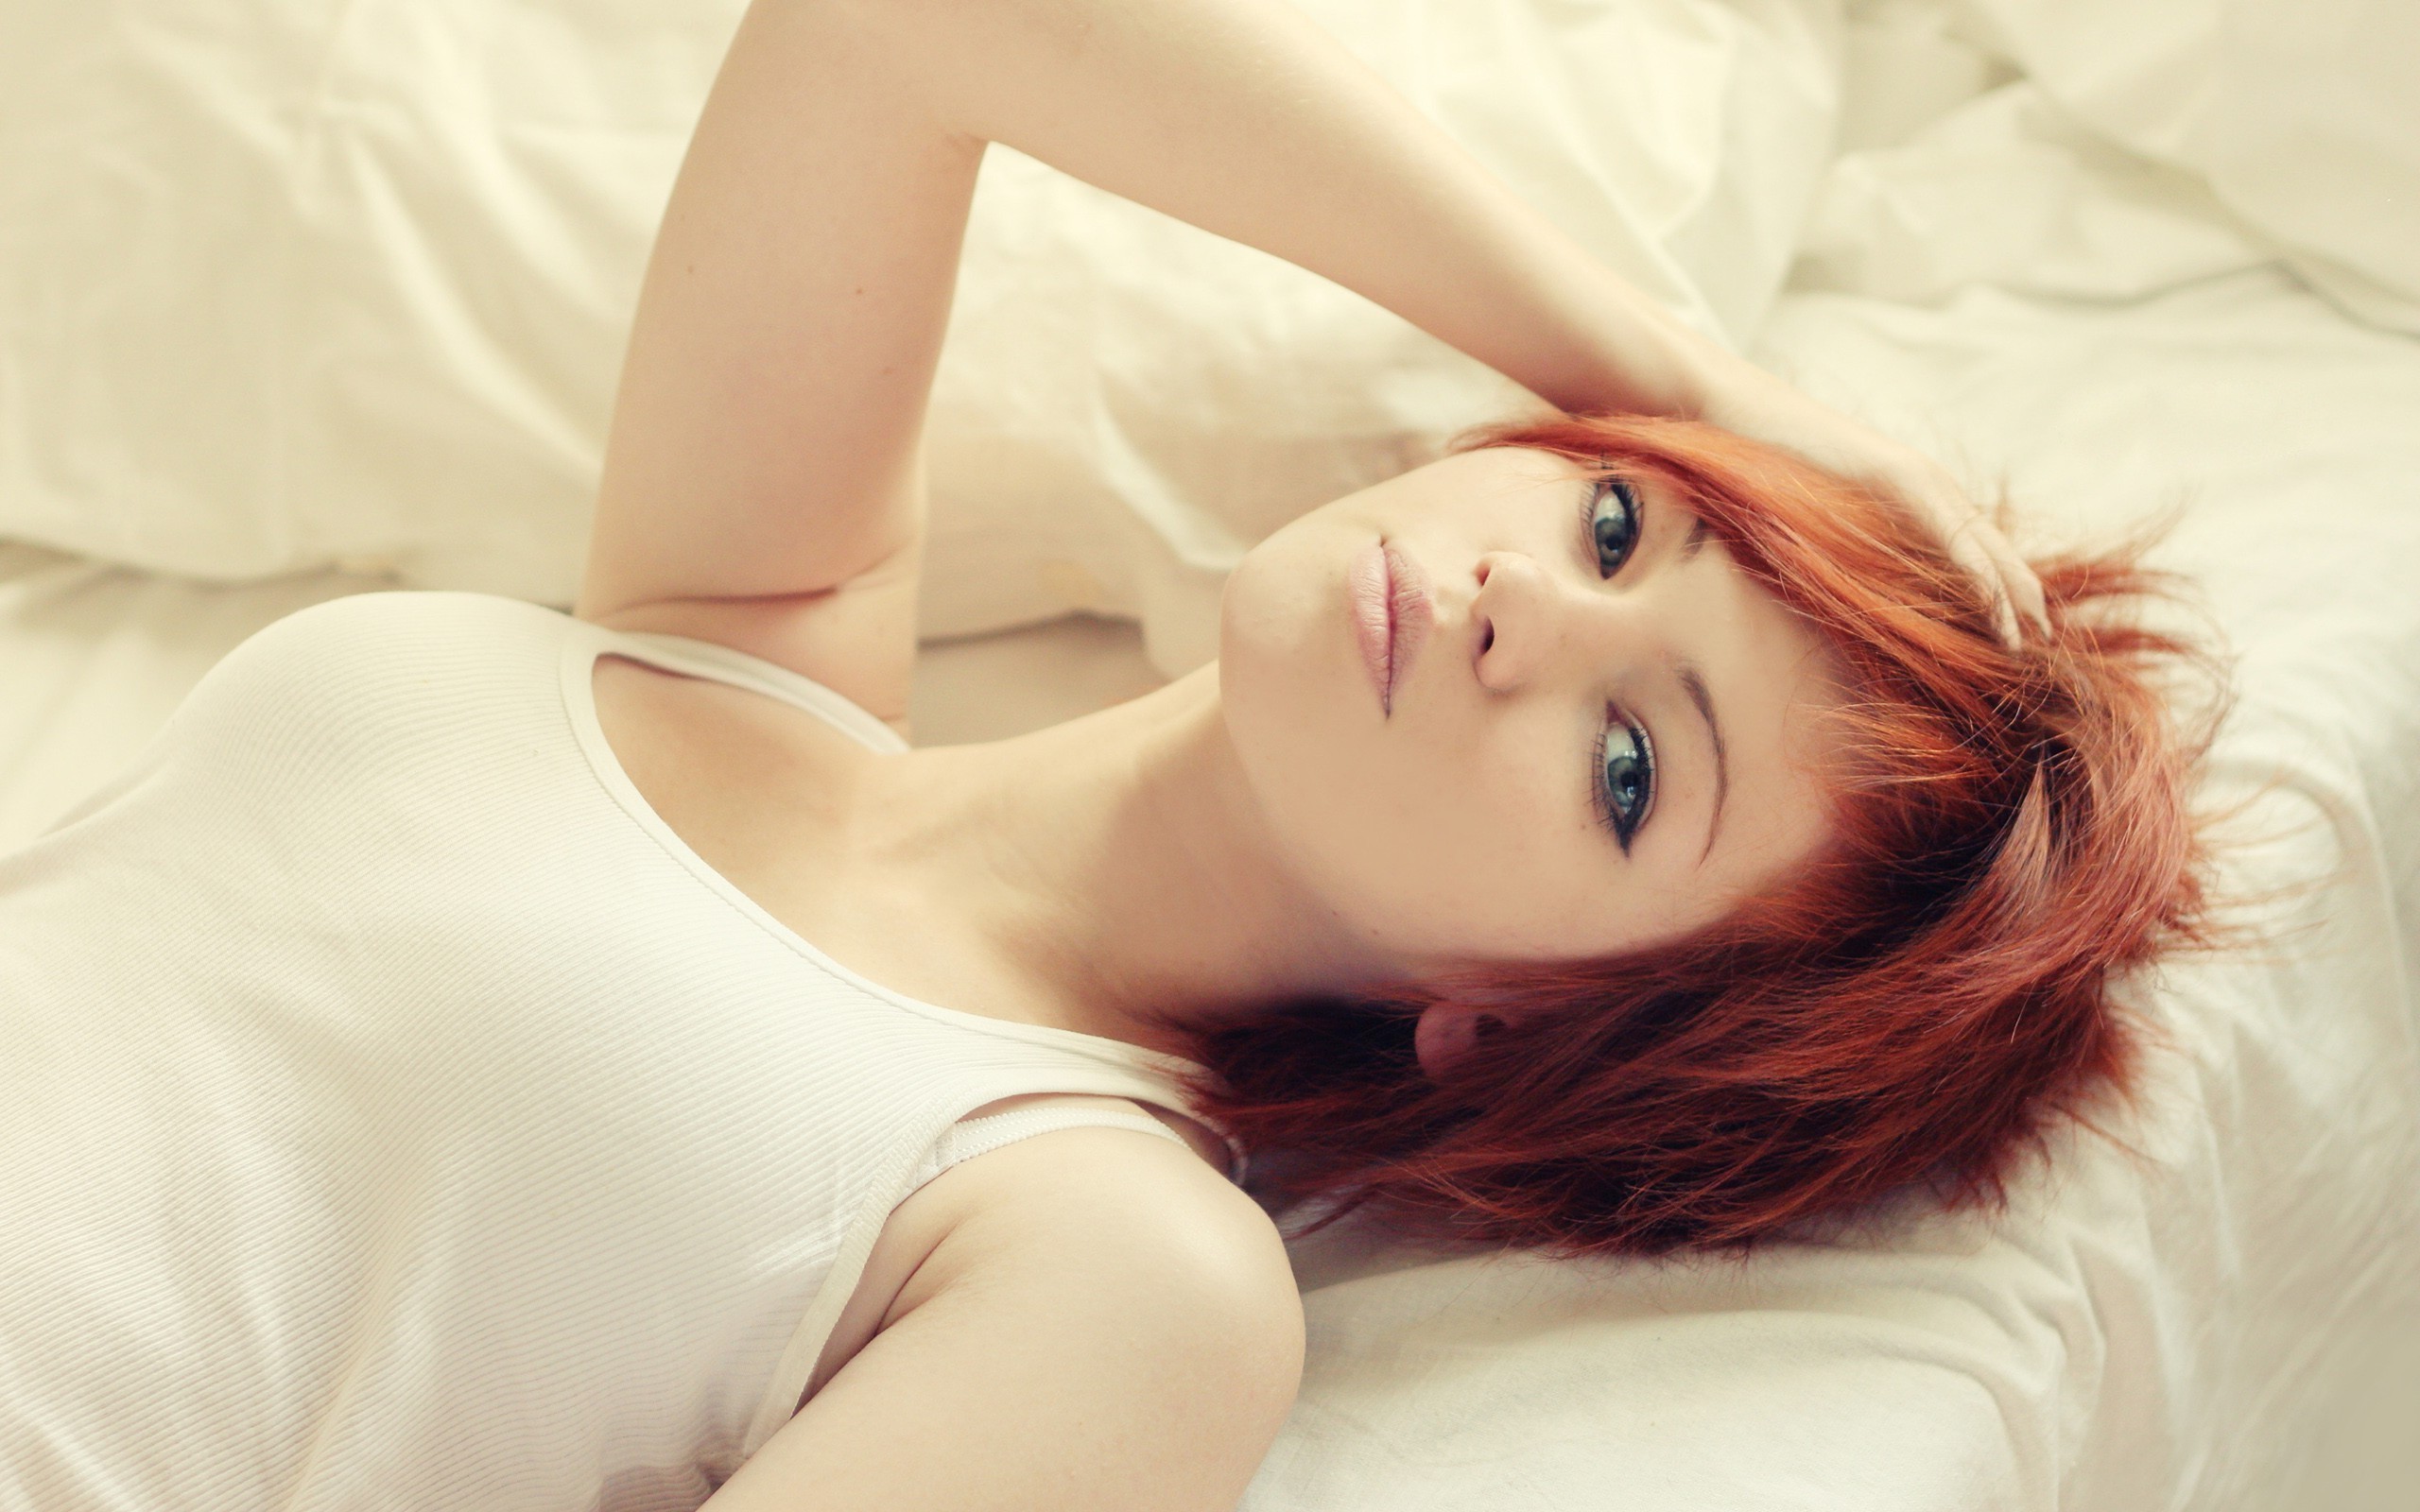 Vladlena Venskaya, Redhead, Women, Blue Eyes, In Bed, Short Hair, Face Wallpaper